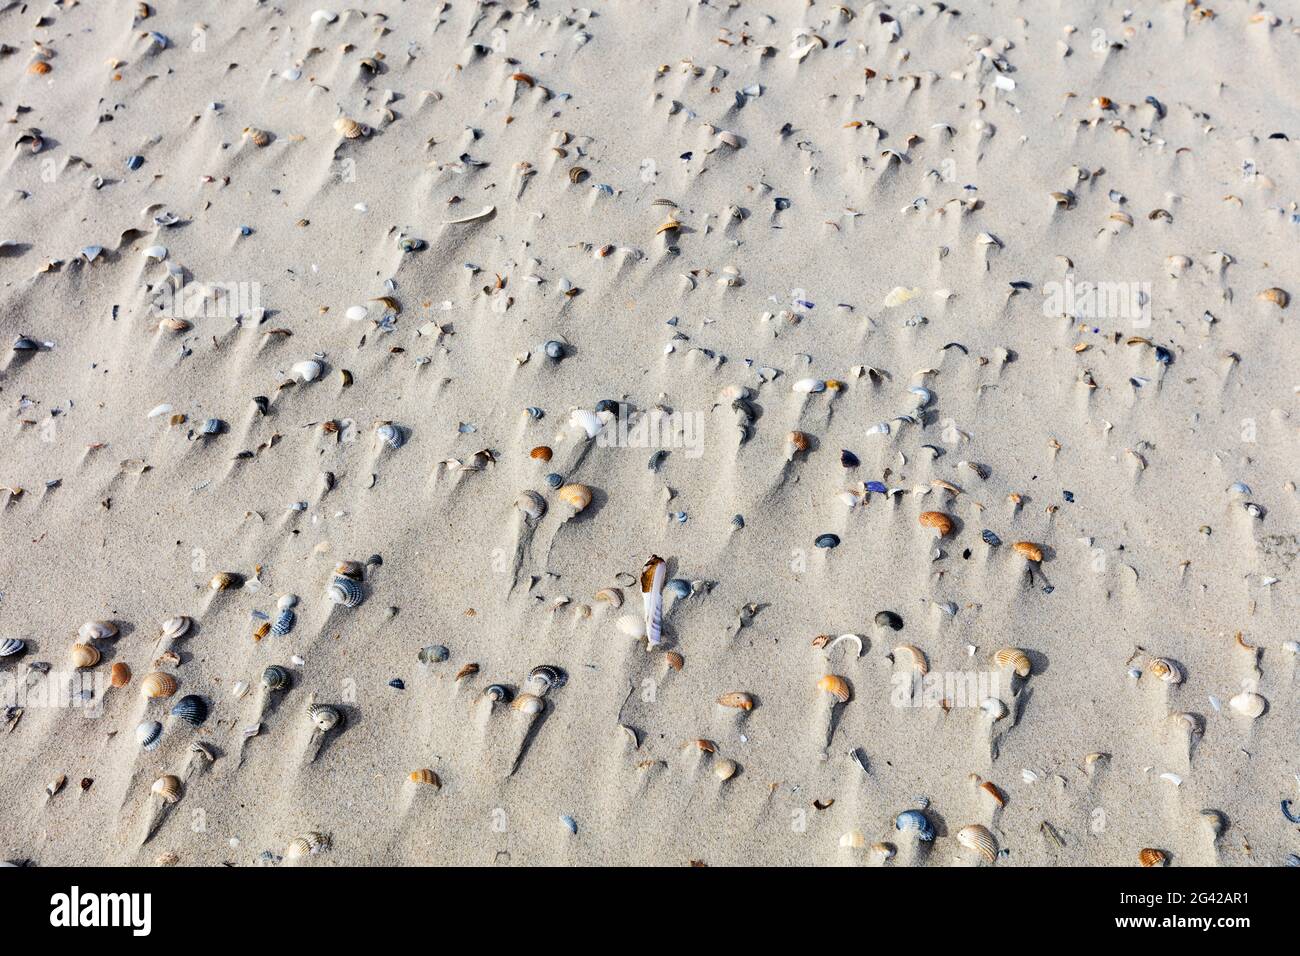 Conchiglie soffiate nella sabbia, spiaggia, vento, Spiekeroog, Frisia orientale, Bassa Sassonia, Germania Foto Stock